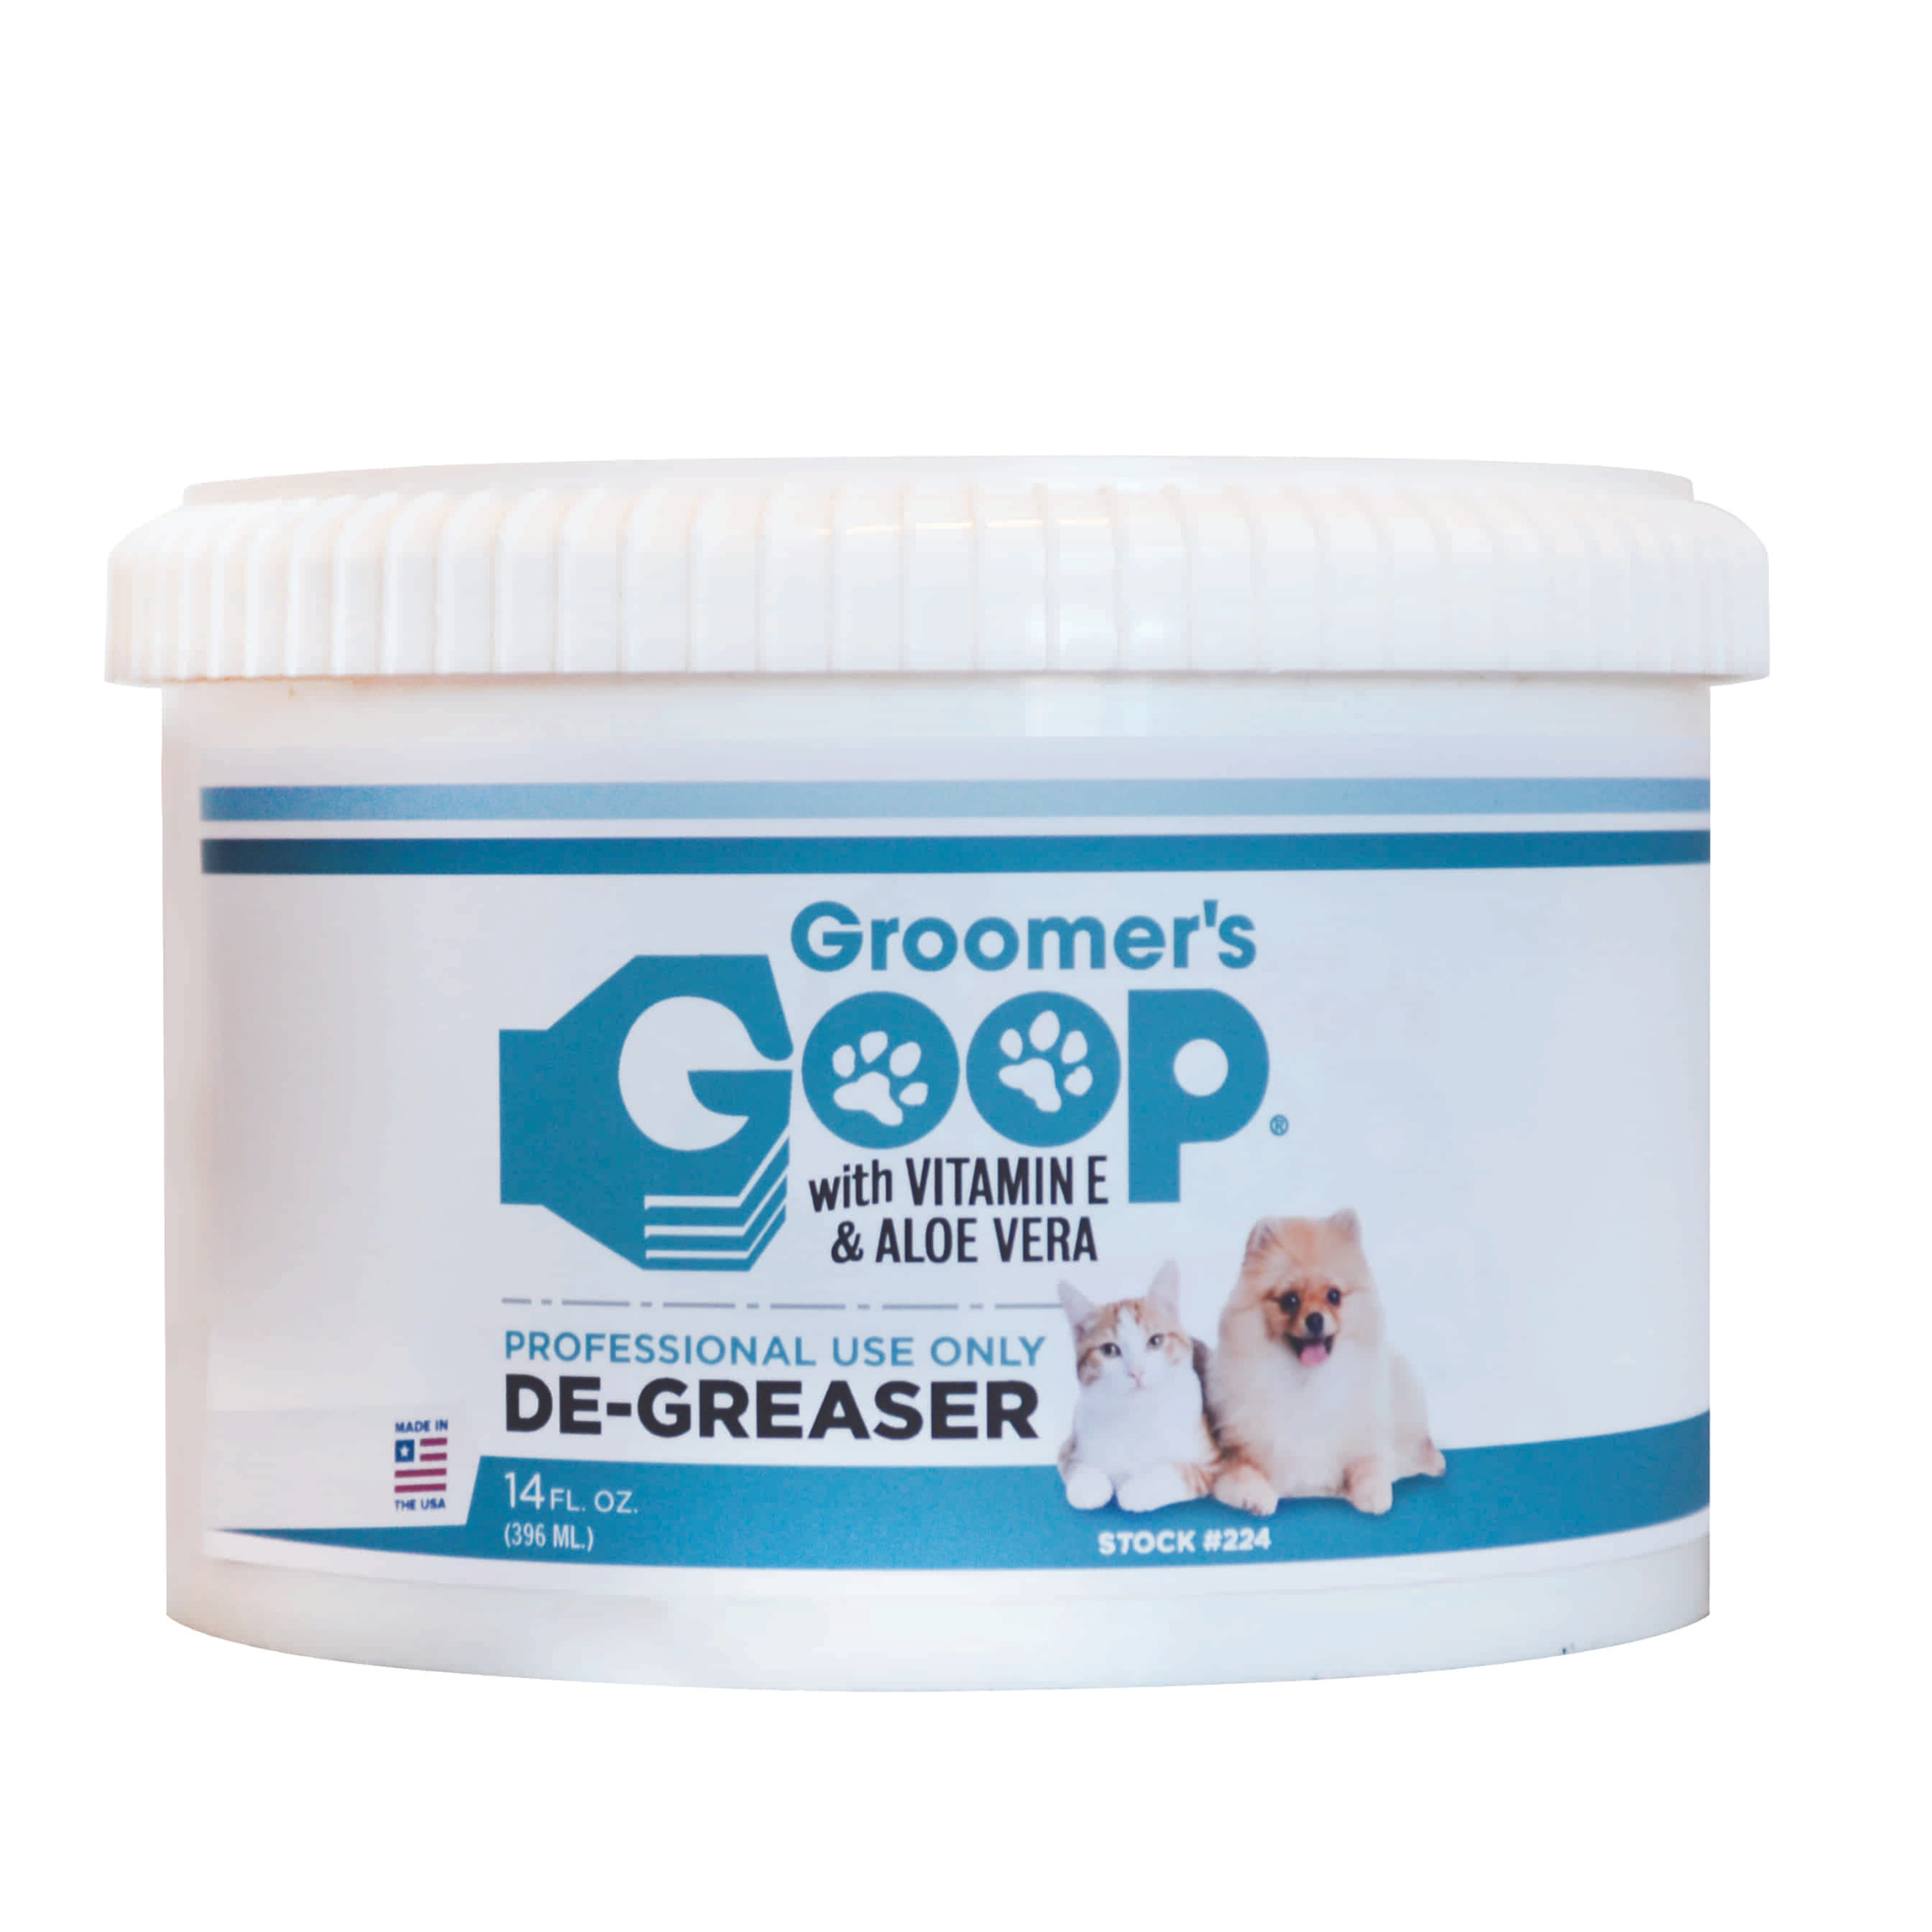 Groomers Goop Creme De-Greaser for Pets